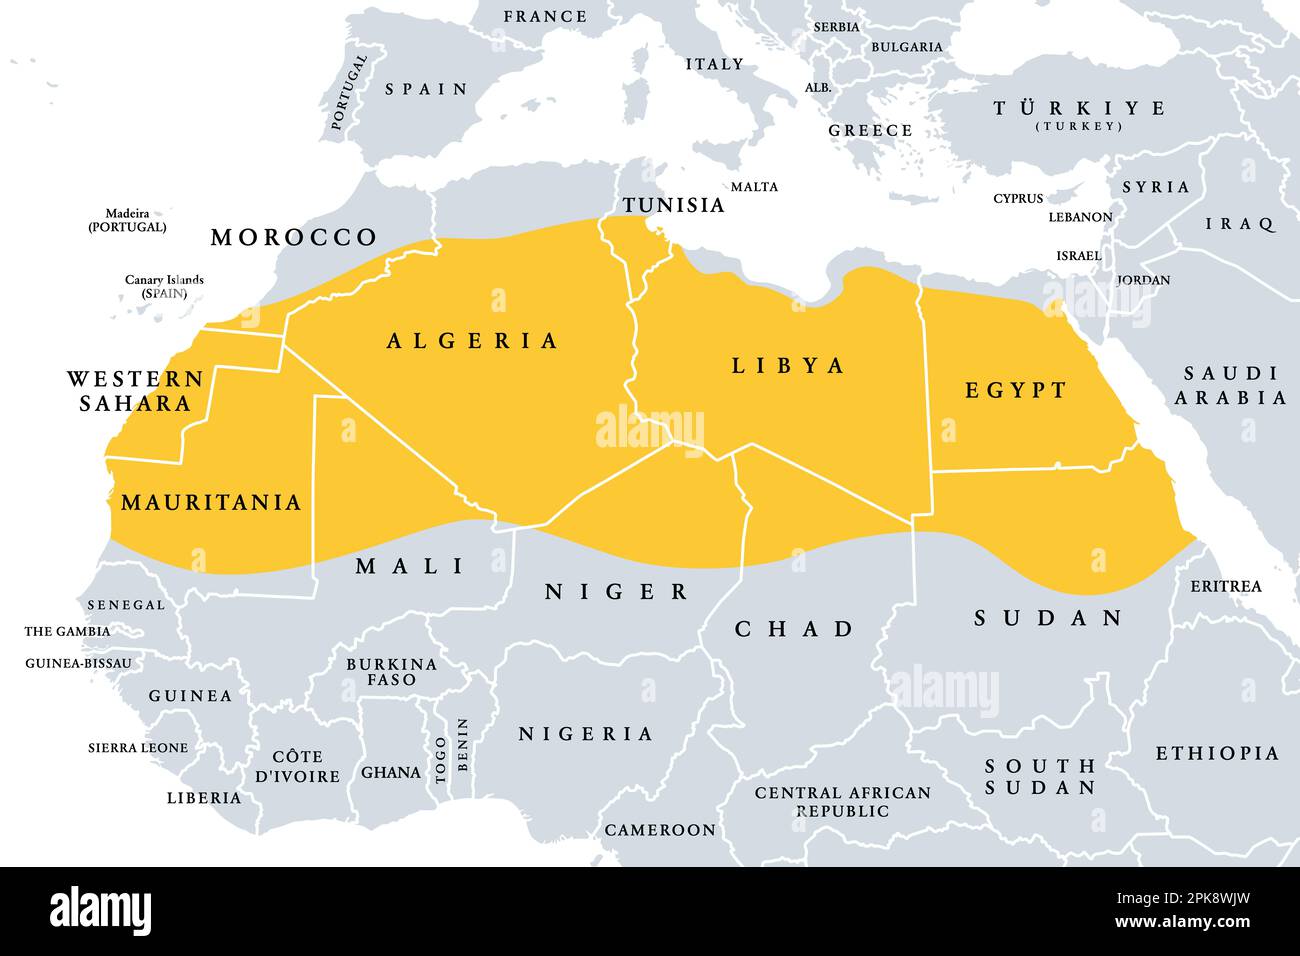 Die Sahara, Wüste auf dem afrikanischen Kontinent, politische Karte. Die größte heiße Wüste der Welt, die den größten Teil Nordafrikas ausmacht. Stockfoto